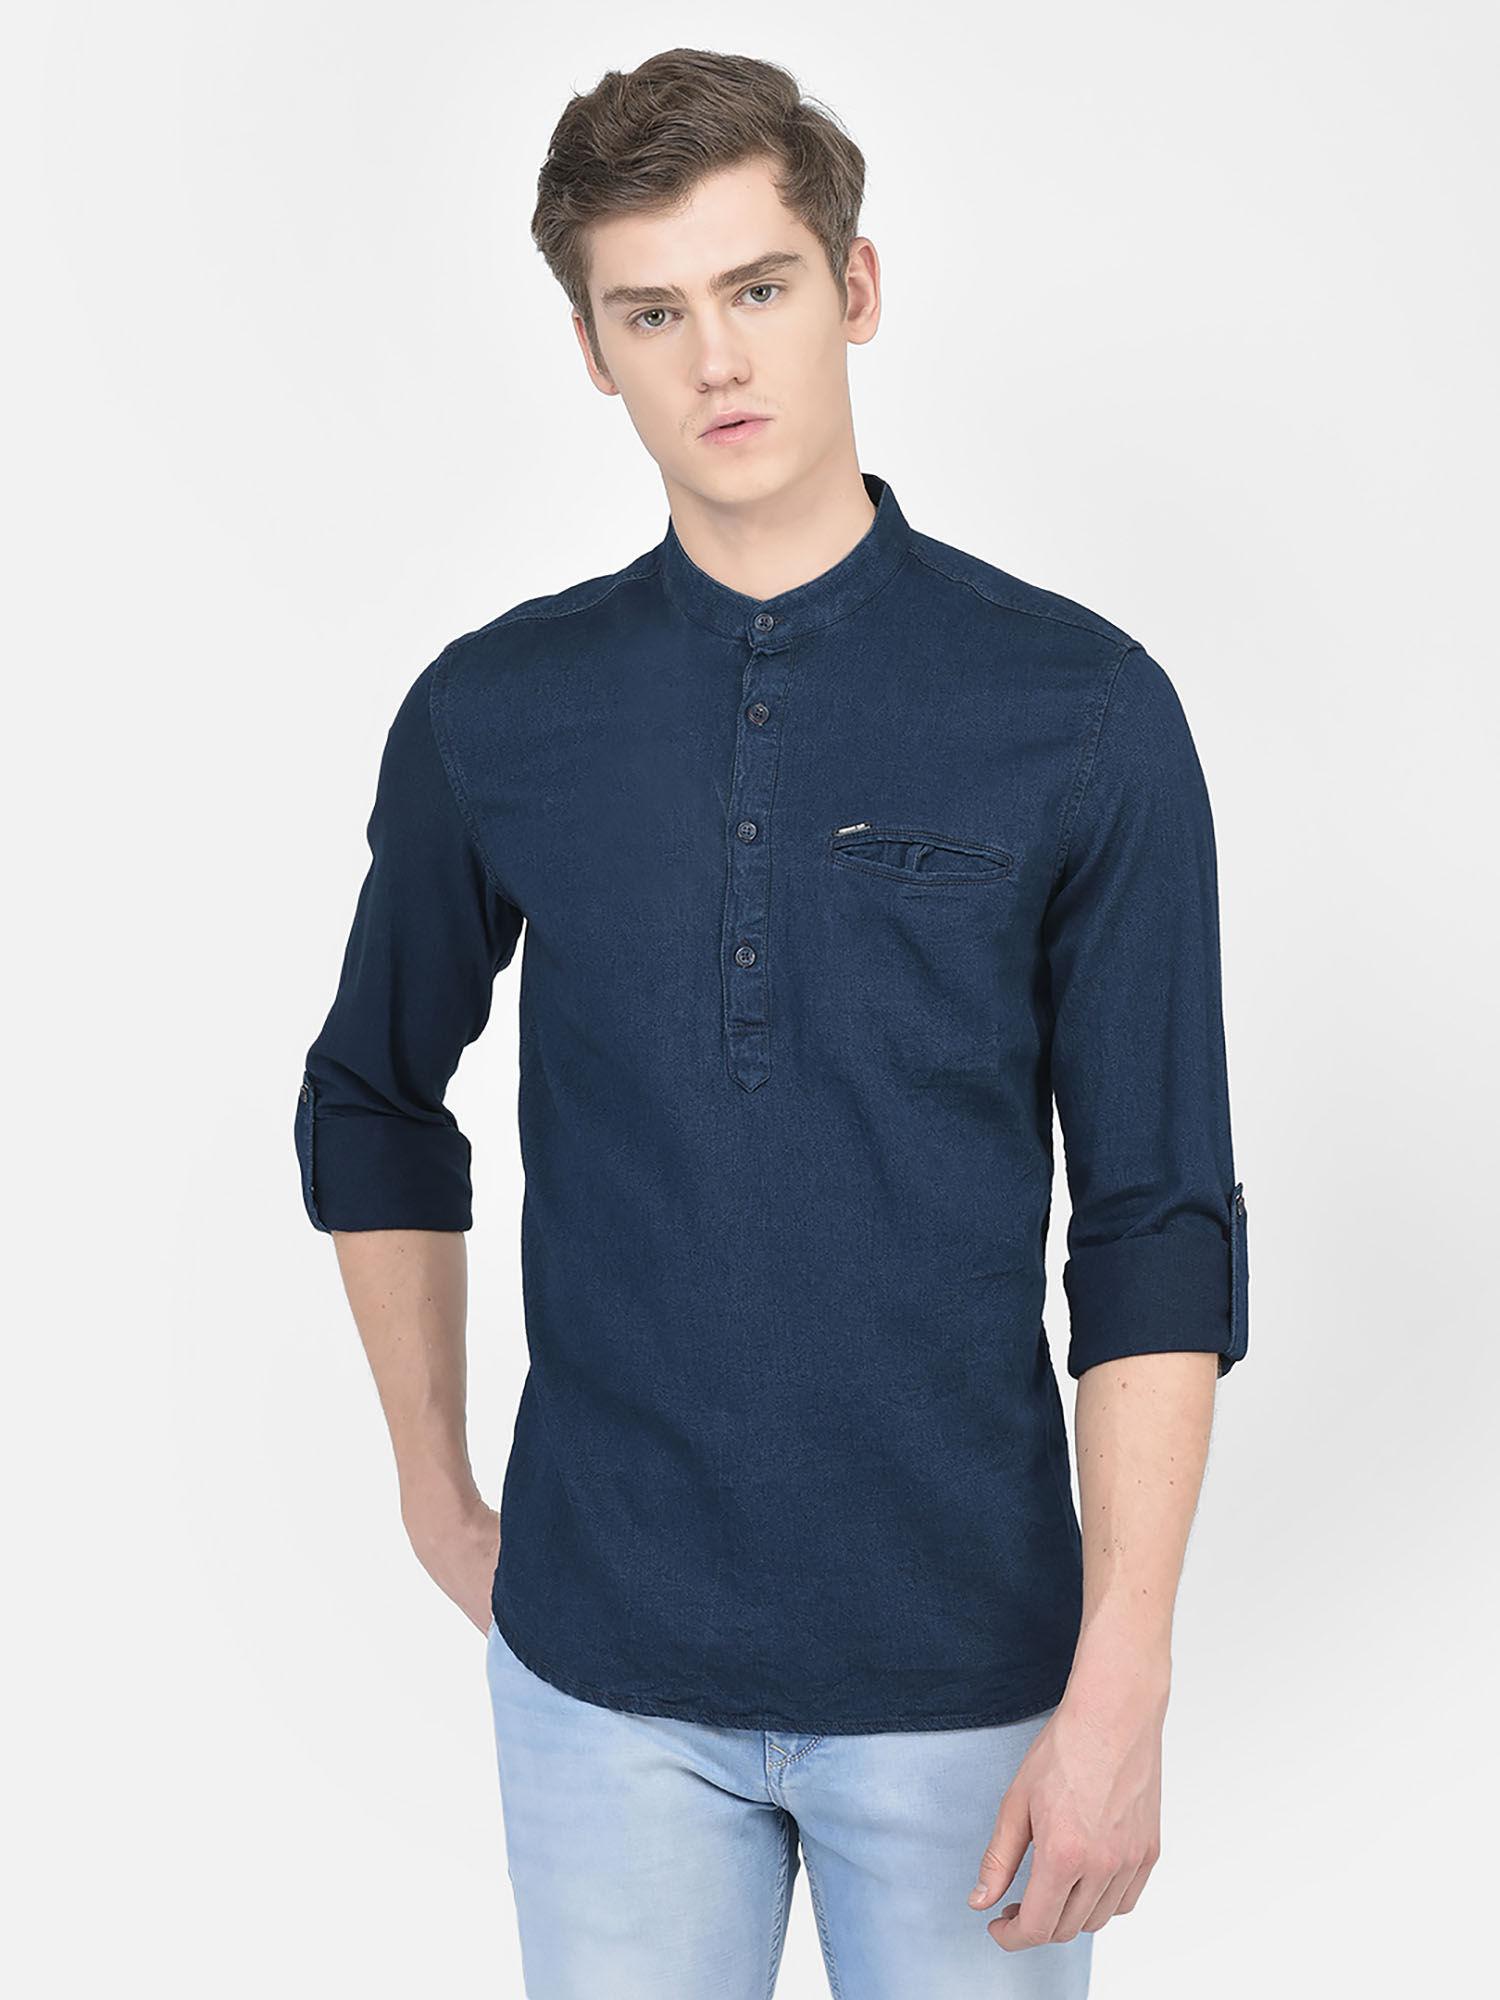 men shirt style denim navy blue short kurta